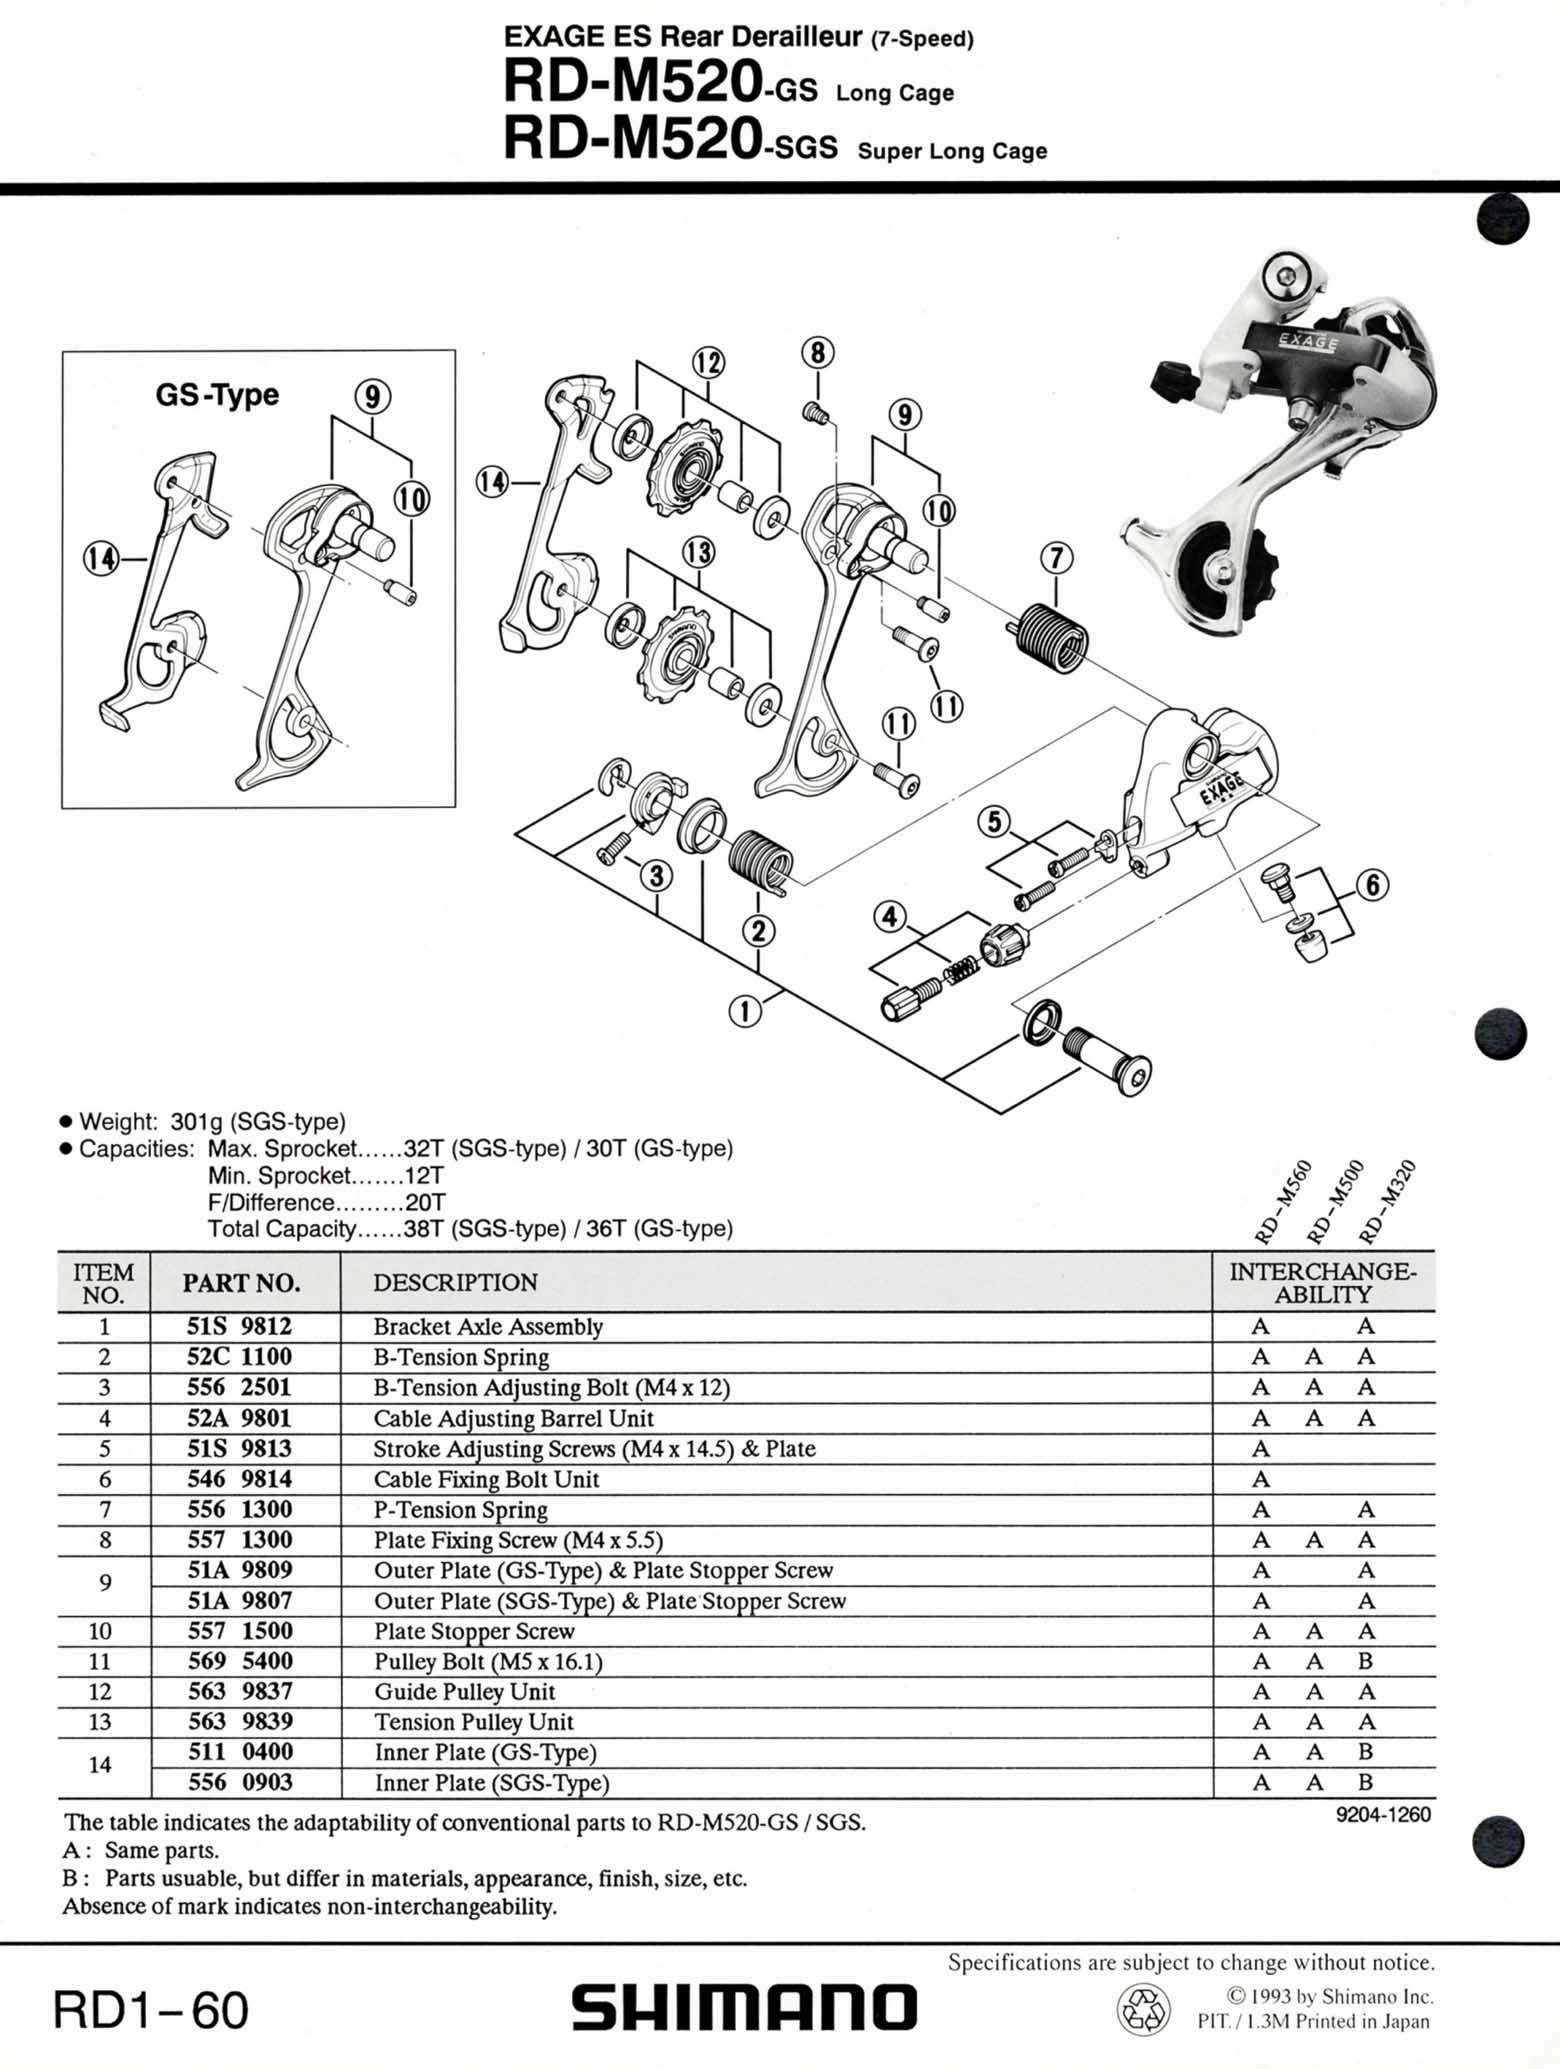 Shimano Bicycle Parts - 1993 scan 02 main image